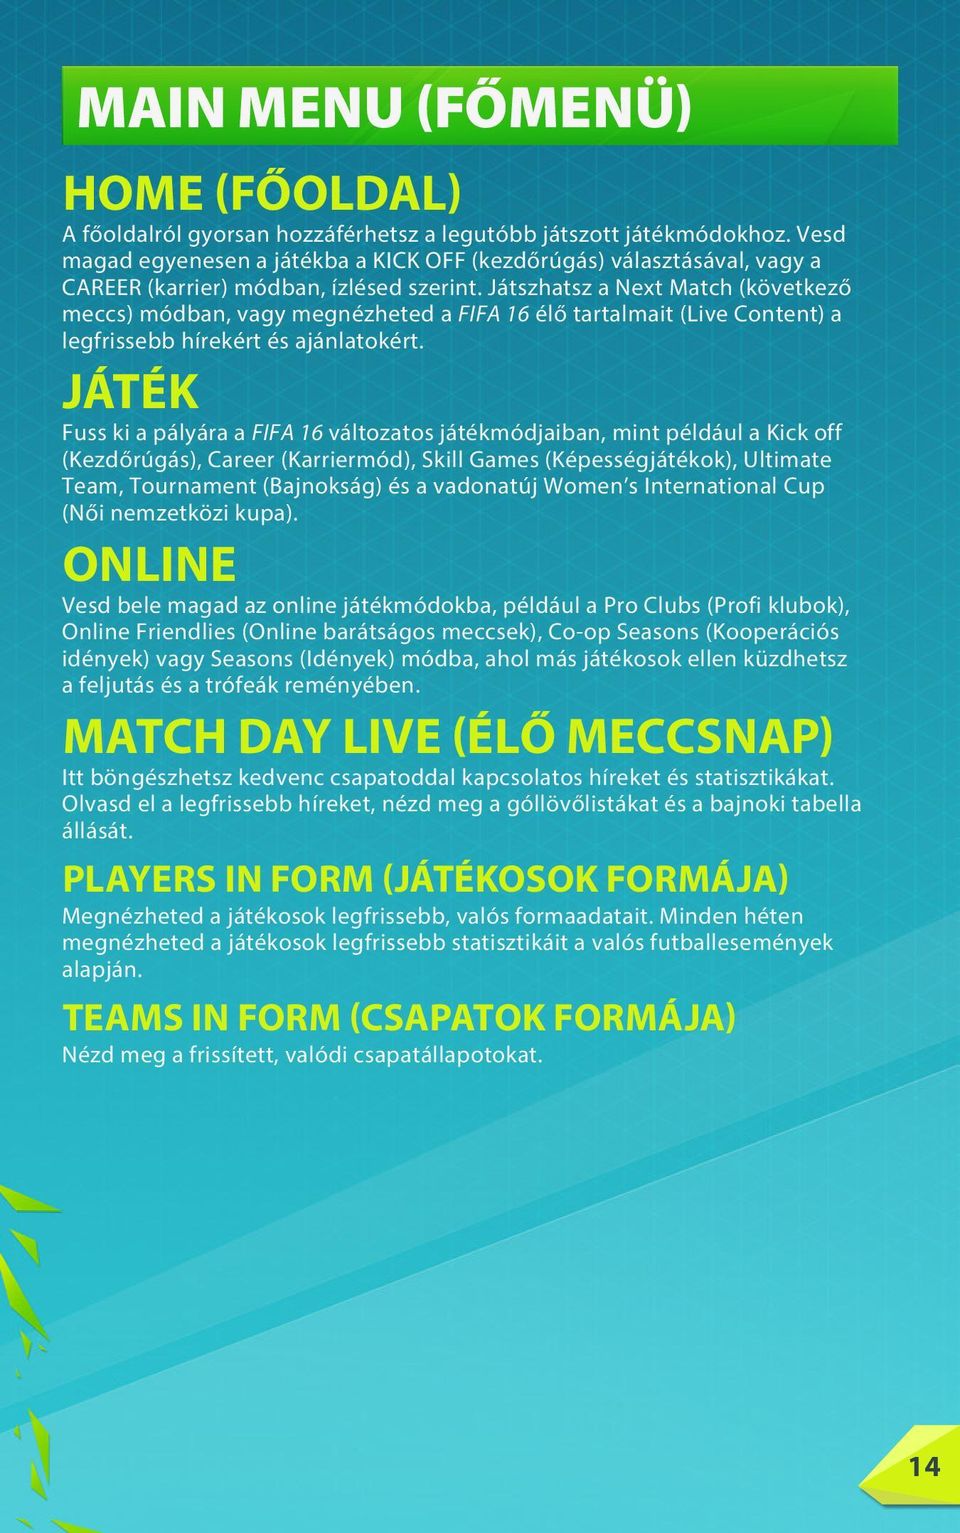 Játszhatsz a Next Match (következő meccs) módban, vagy megnézheted a FIFA 16 élő tartalmait (Live Content) a legfrissebb hírekért és ajánlatokért.